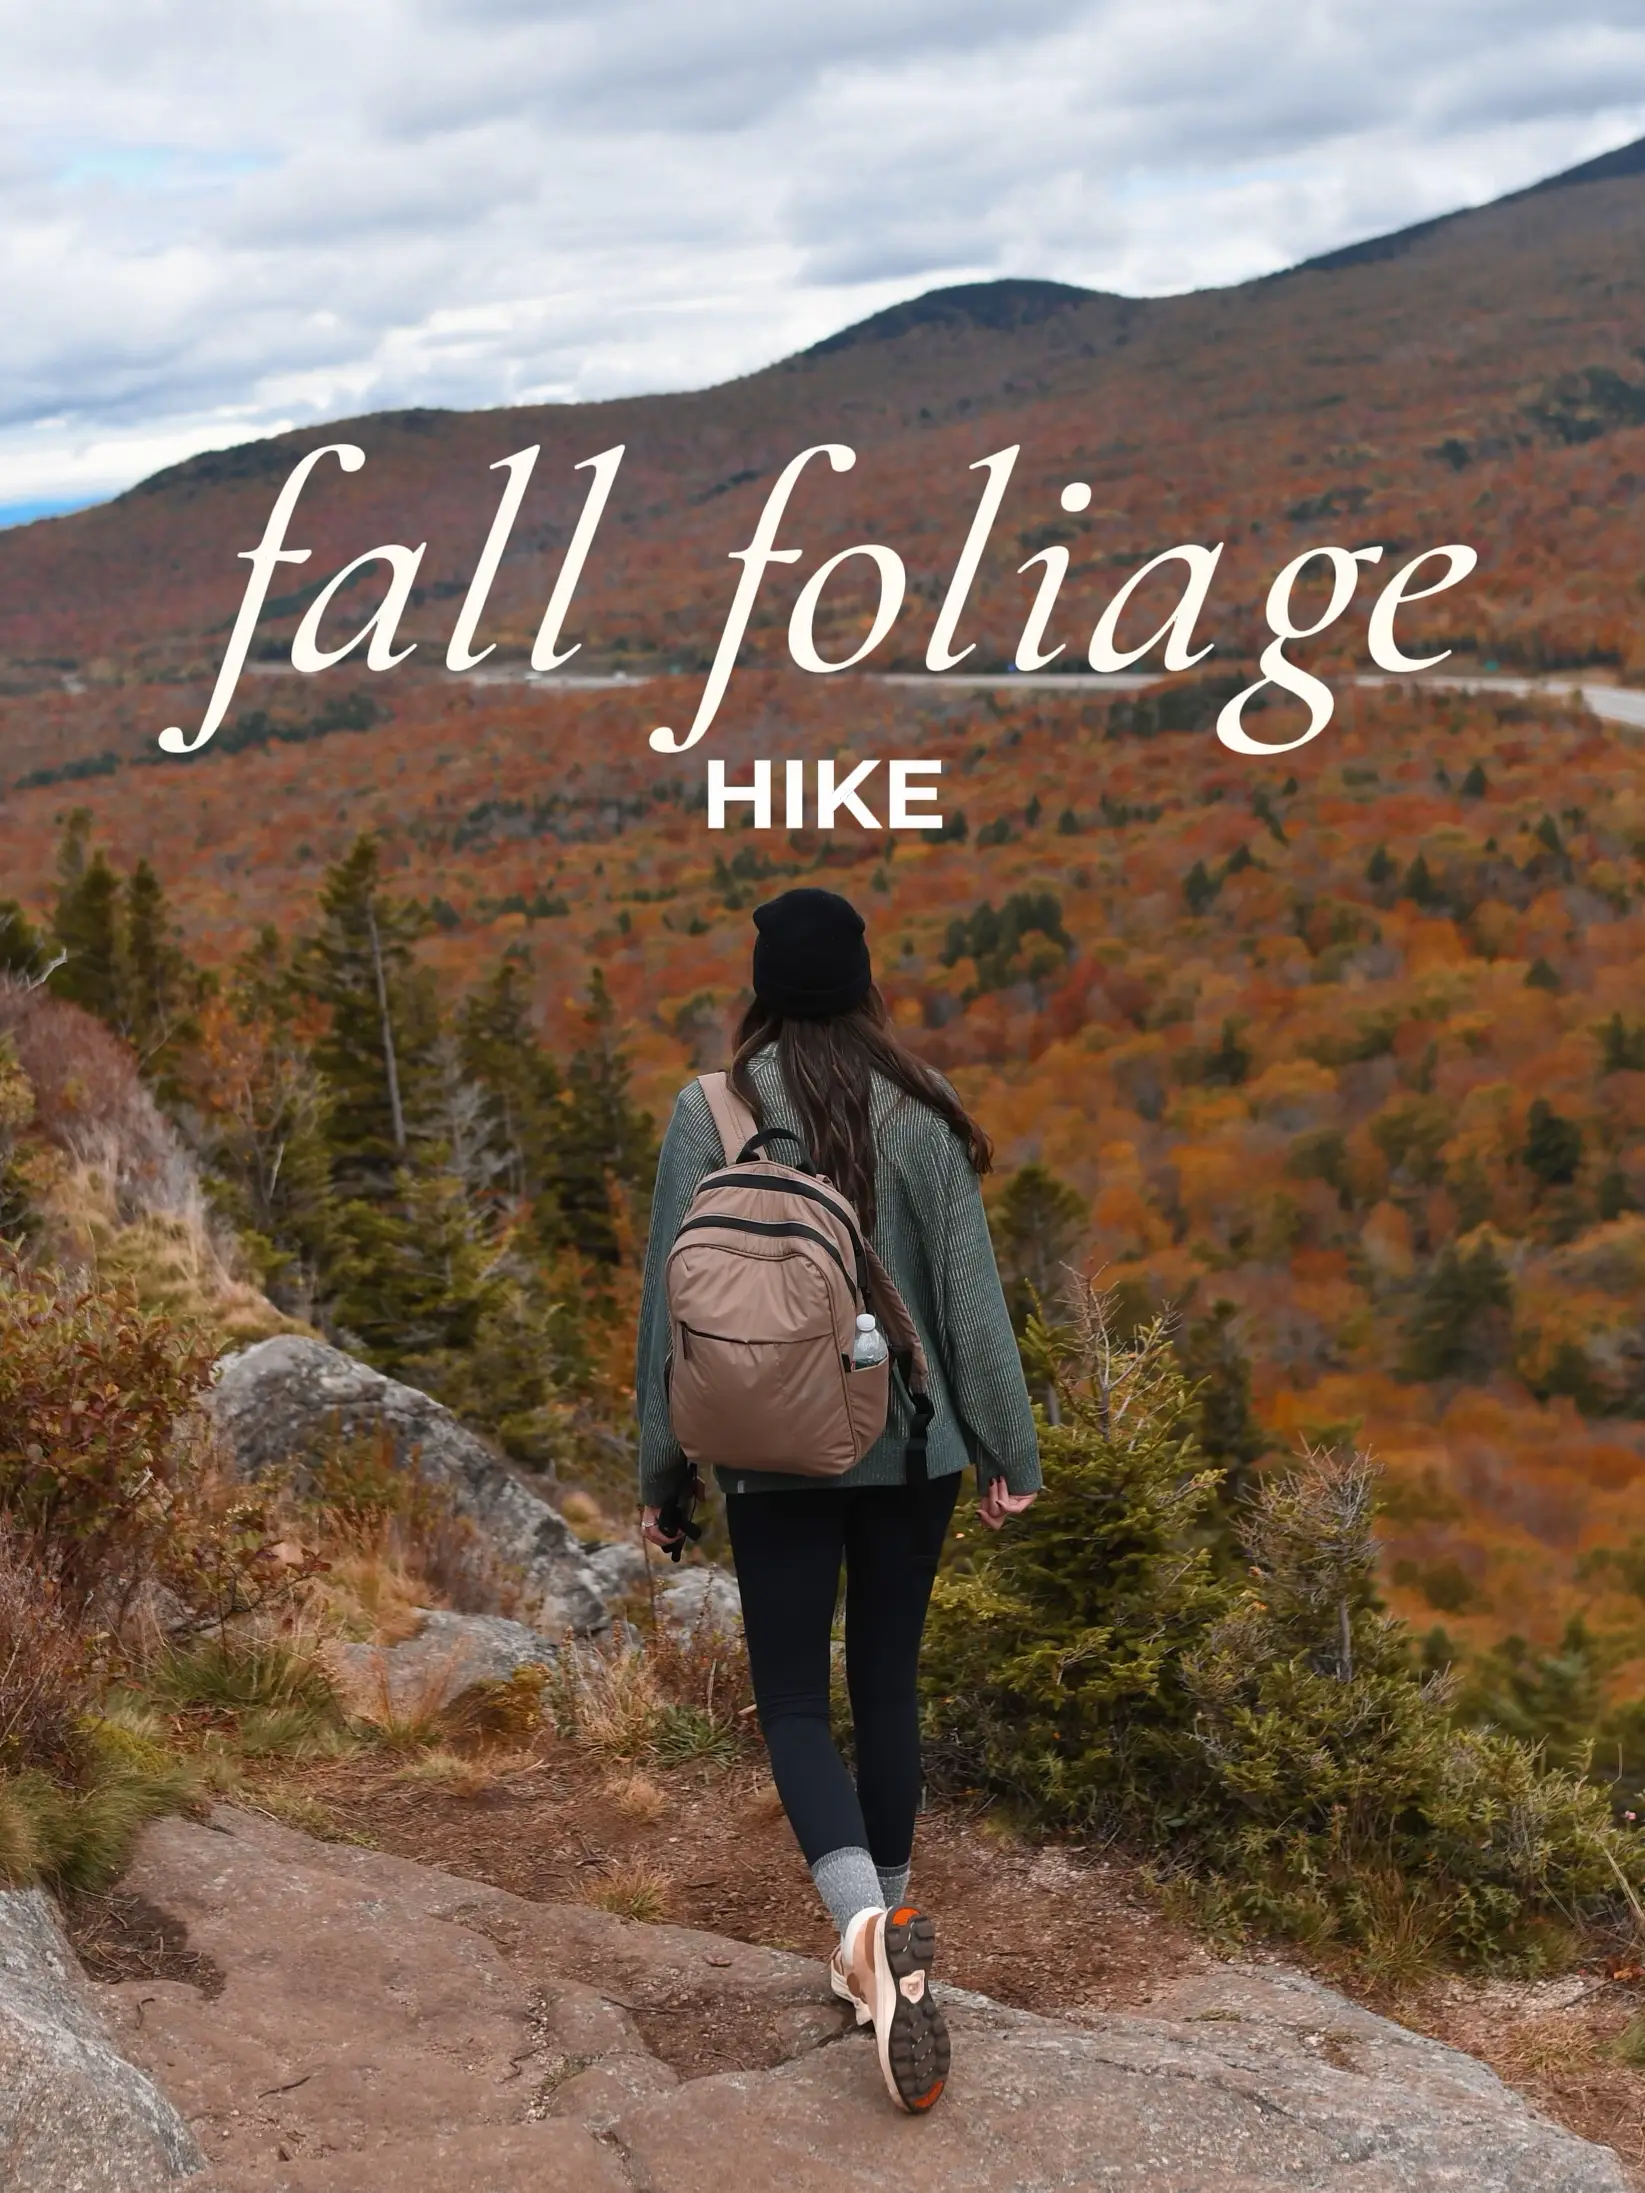 key word: LAYERS! #hikingfit #falloutfits #hikinggear